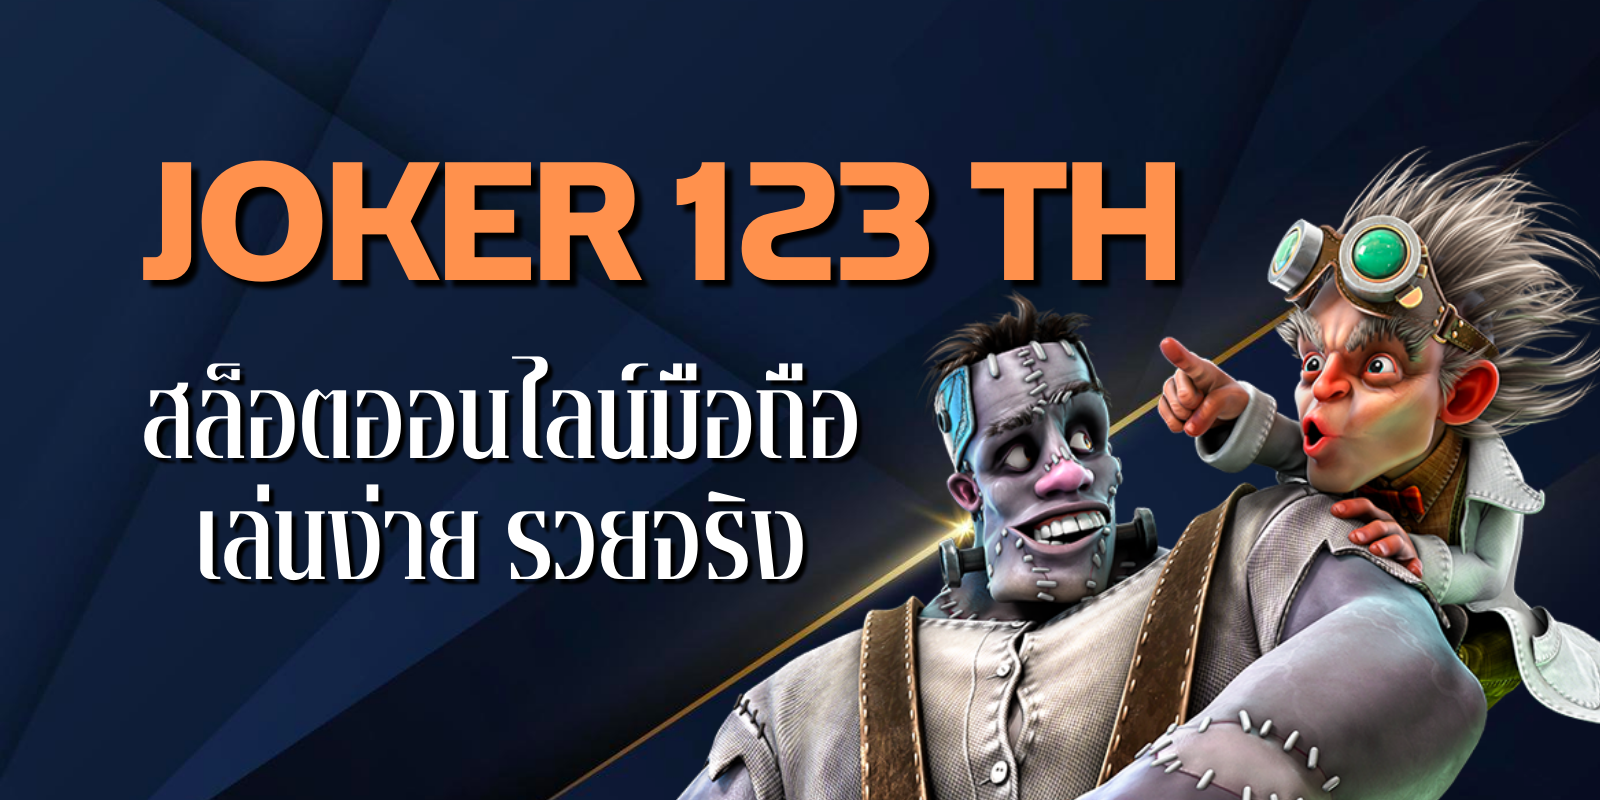 joker 123 th สล็อตออนไลน์มือถือ เล่นง่าย รวยจริง